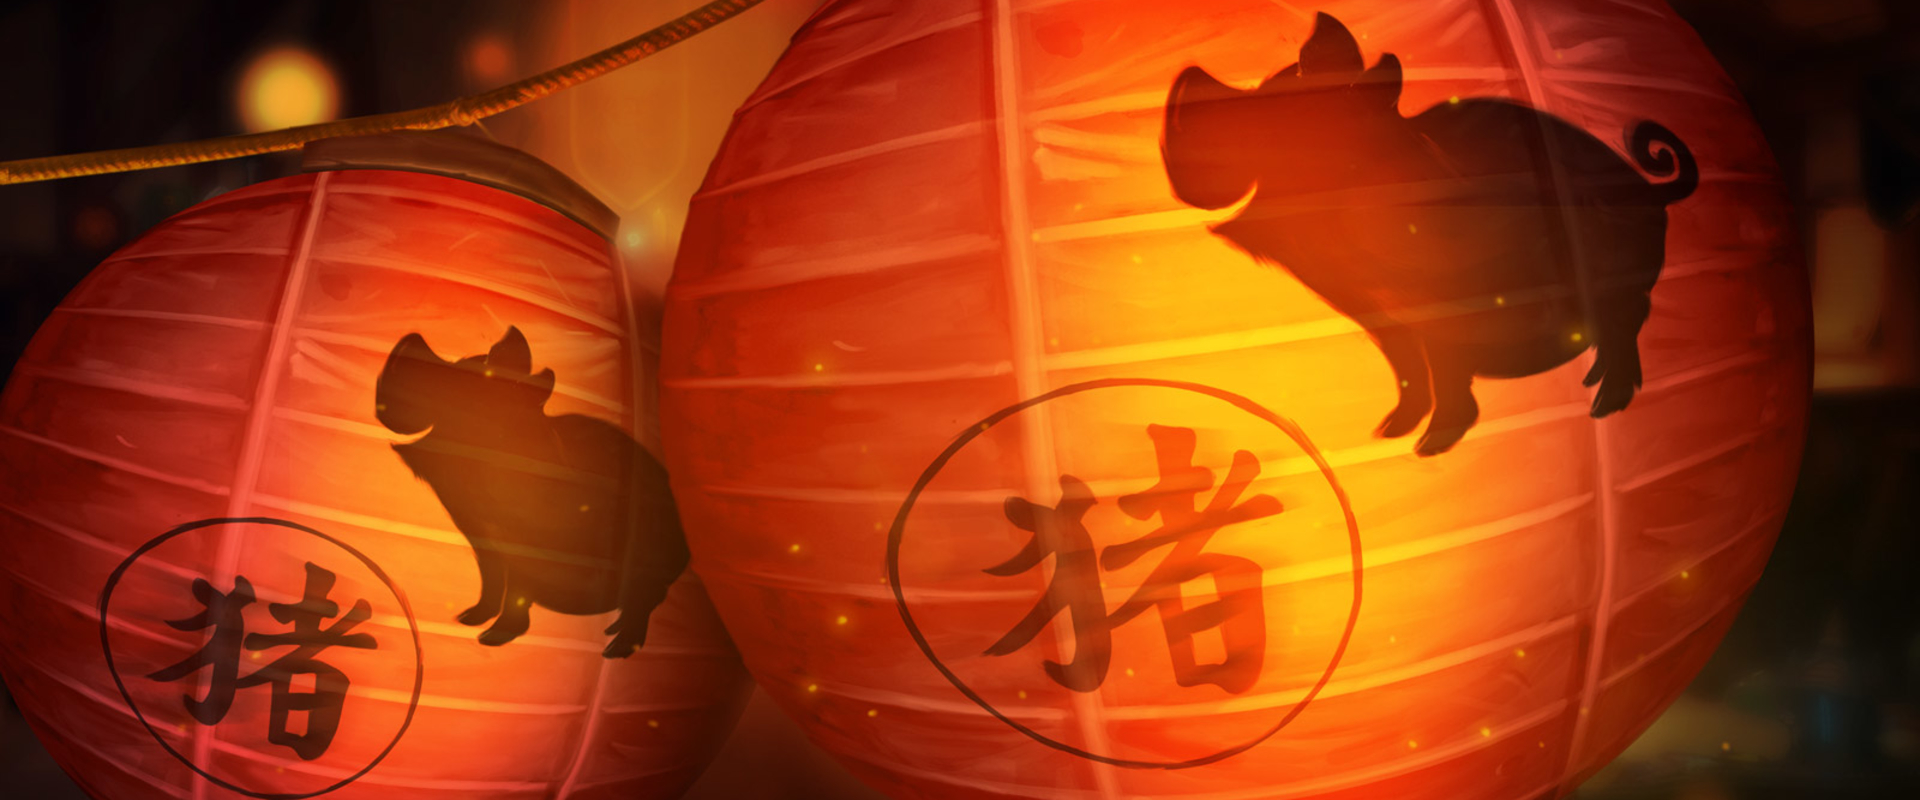 Még egy napig megszerezheted a Lunar New Year jutalmait!